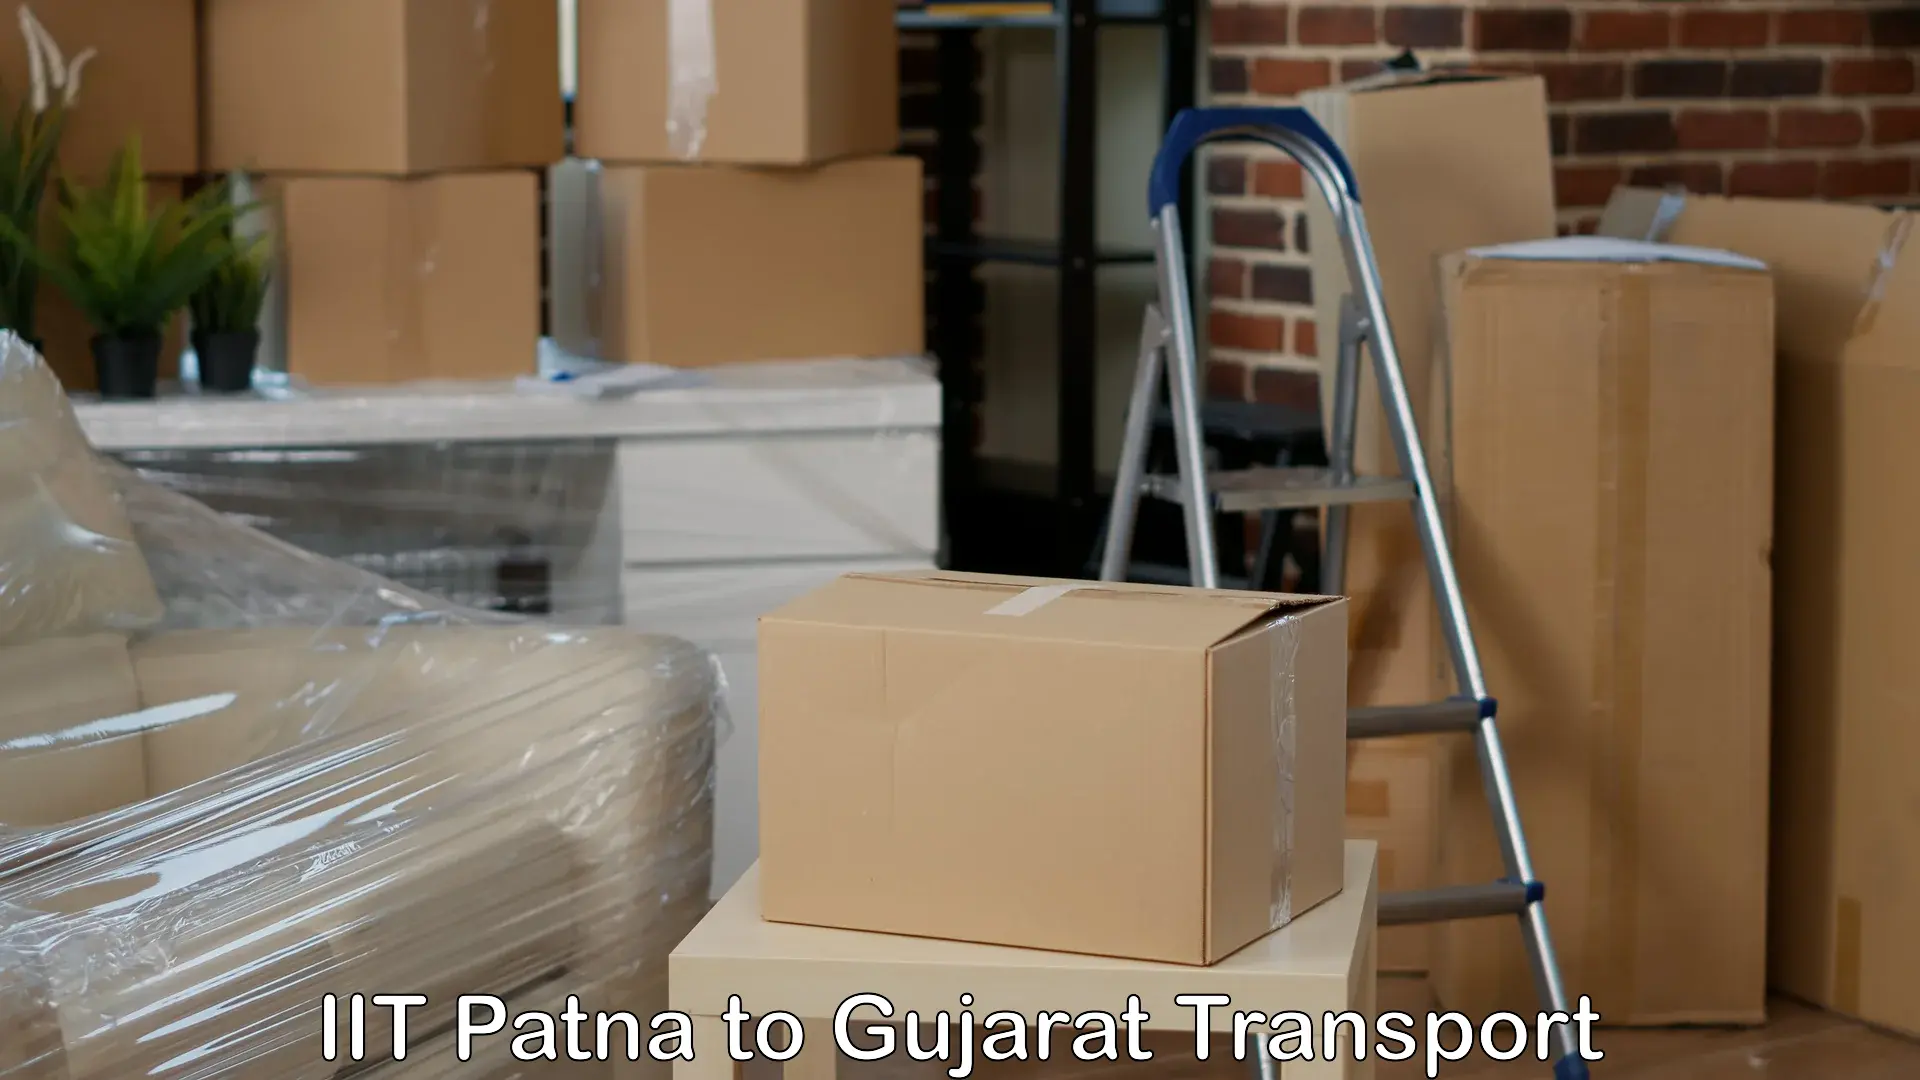 Commercial transport service IIT Patna to Harij